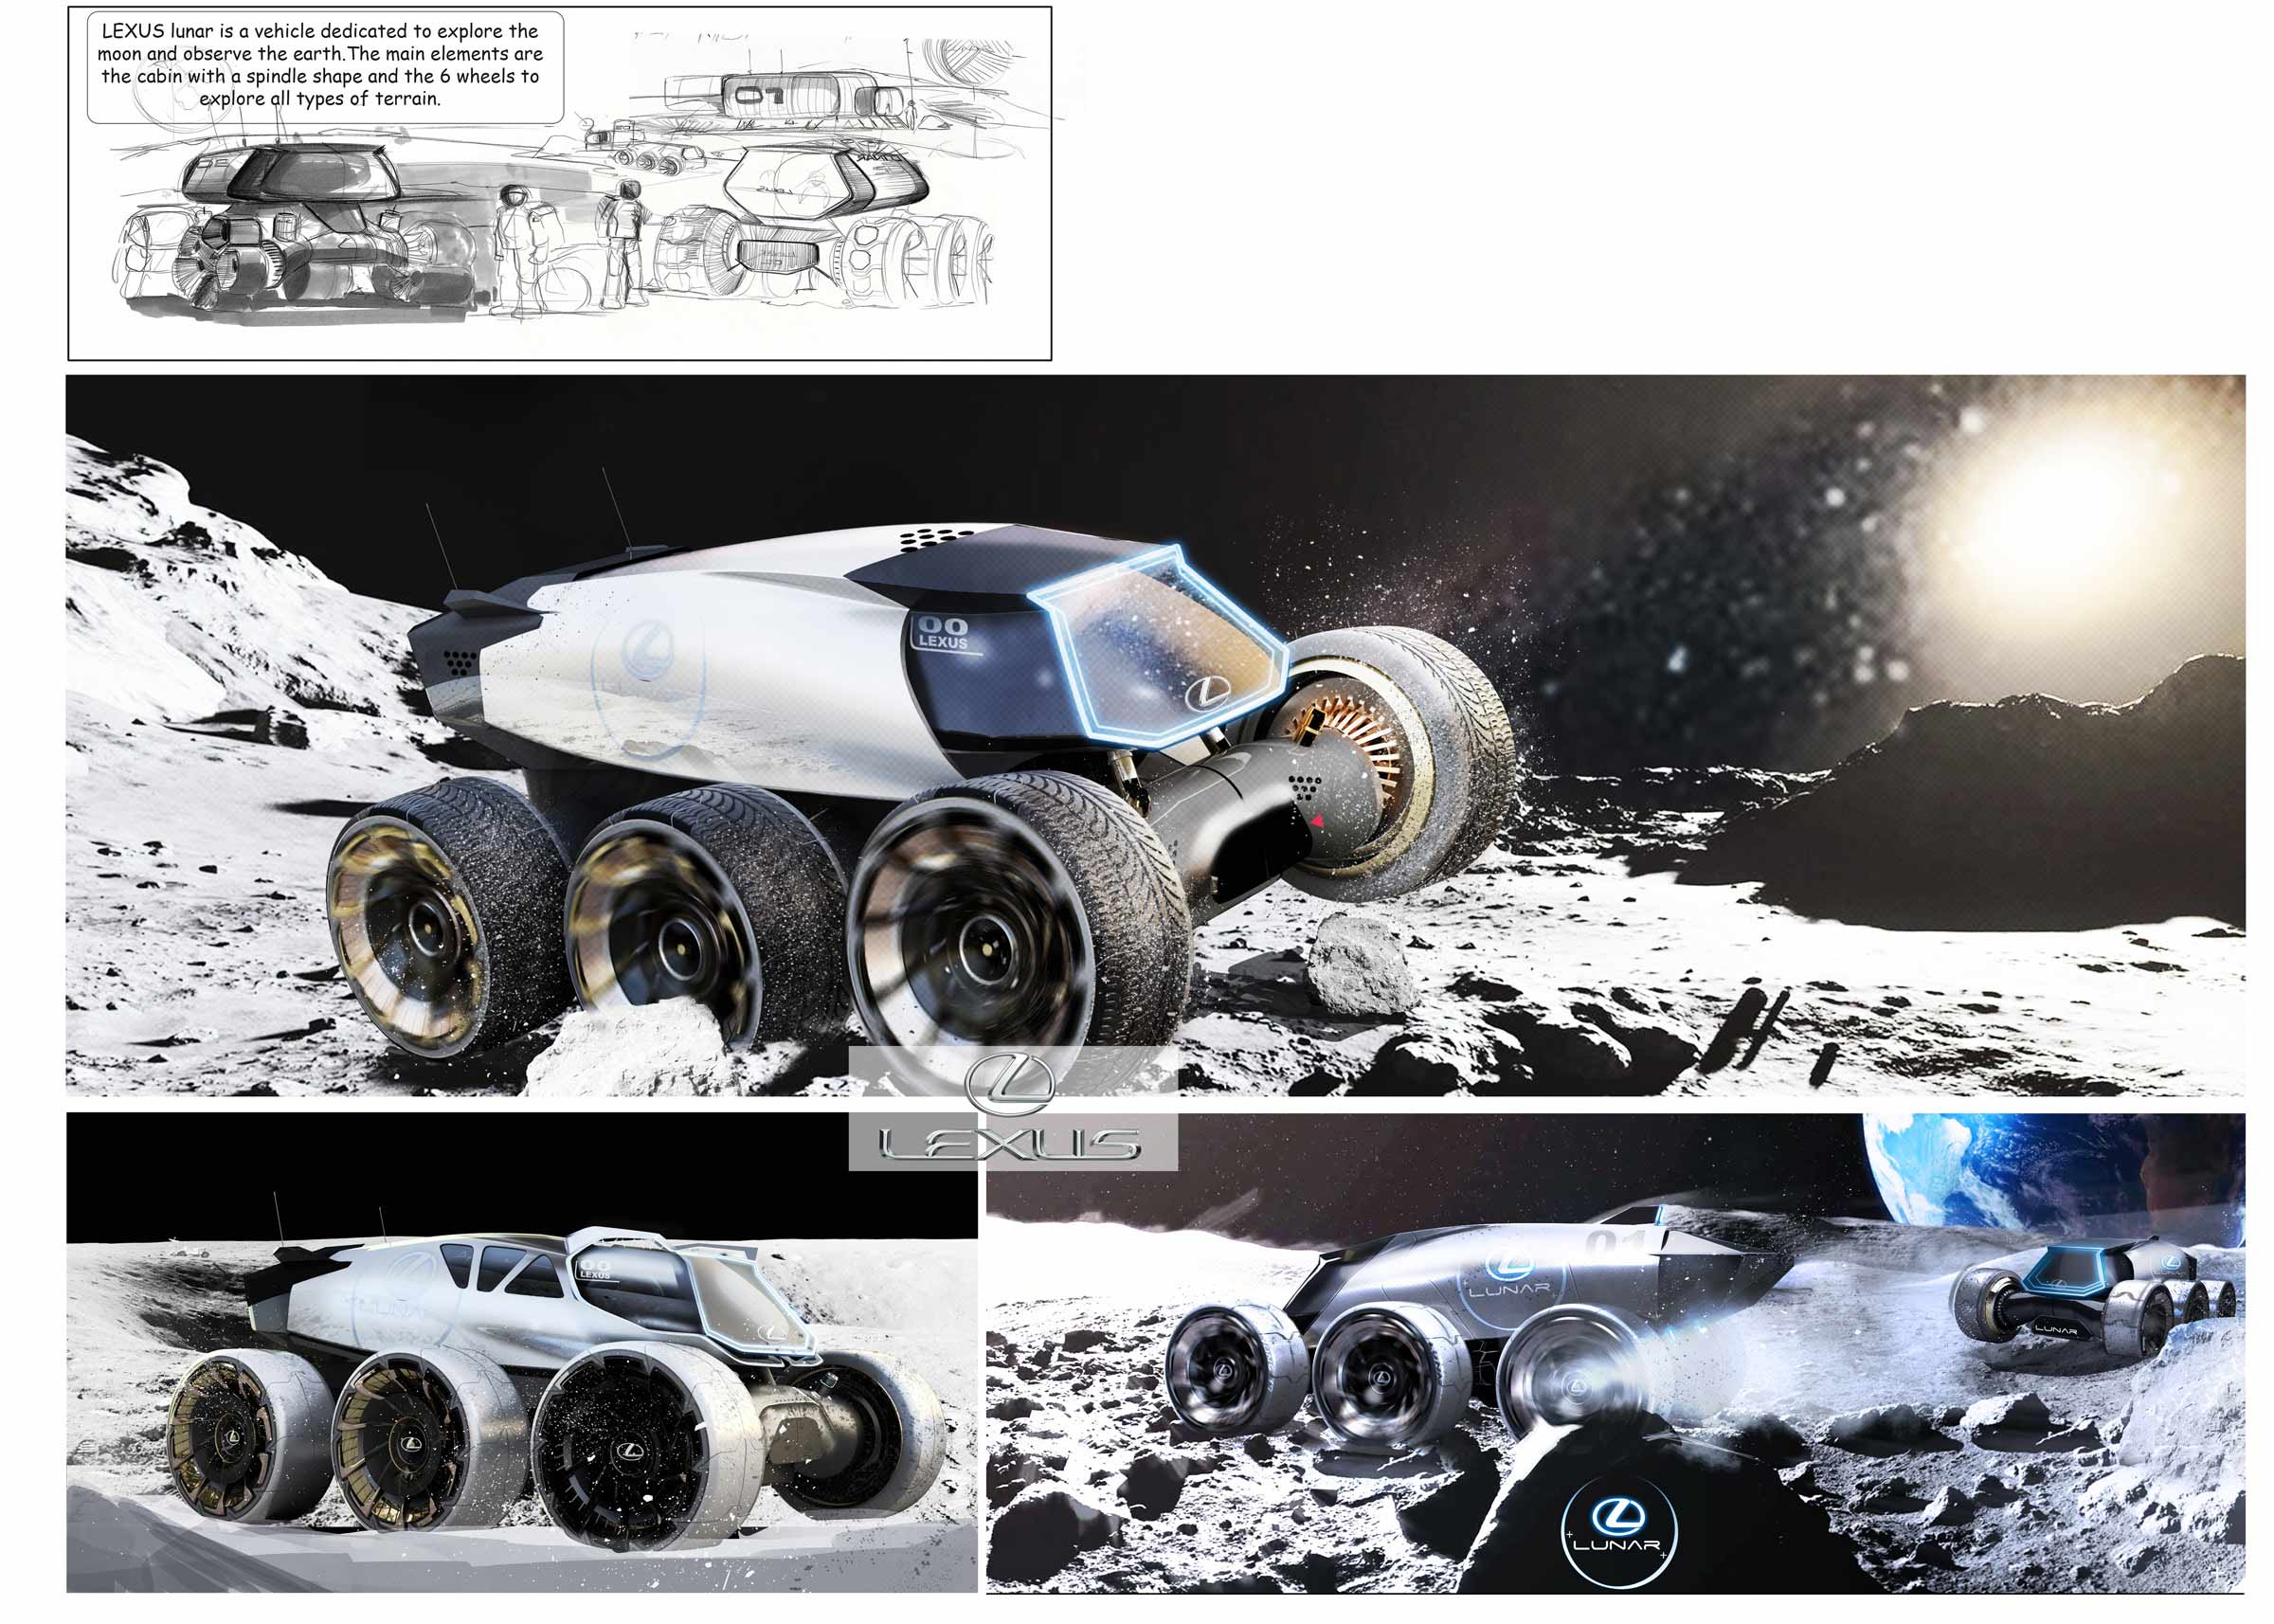 超未来主义的雷克萨斯月球车未来愿景-设计欣赏-中国设计之窗